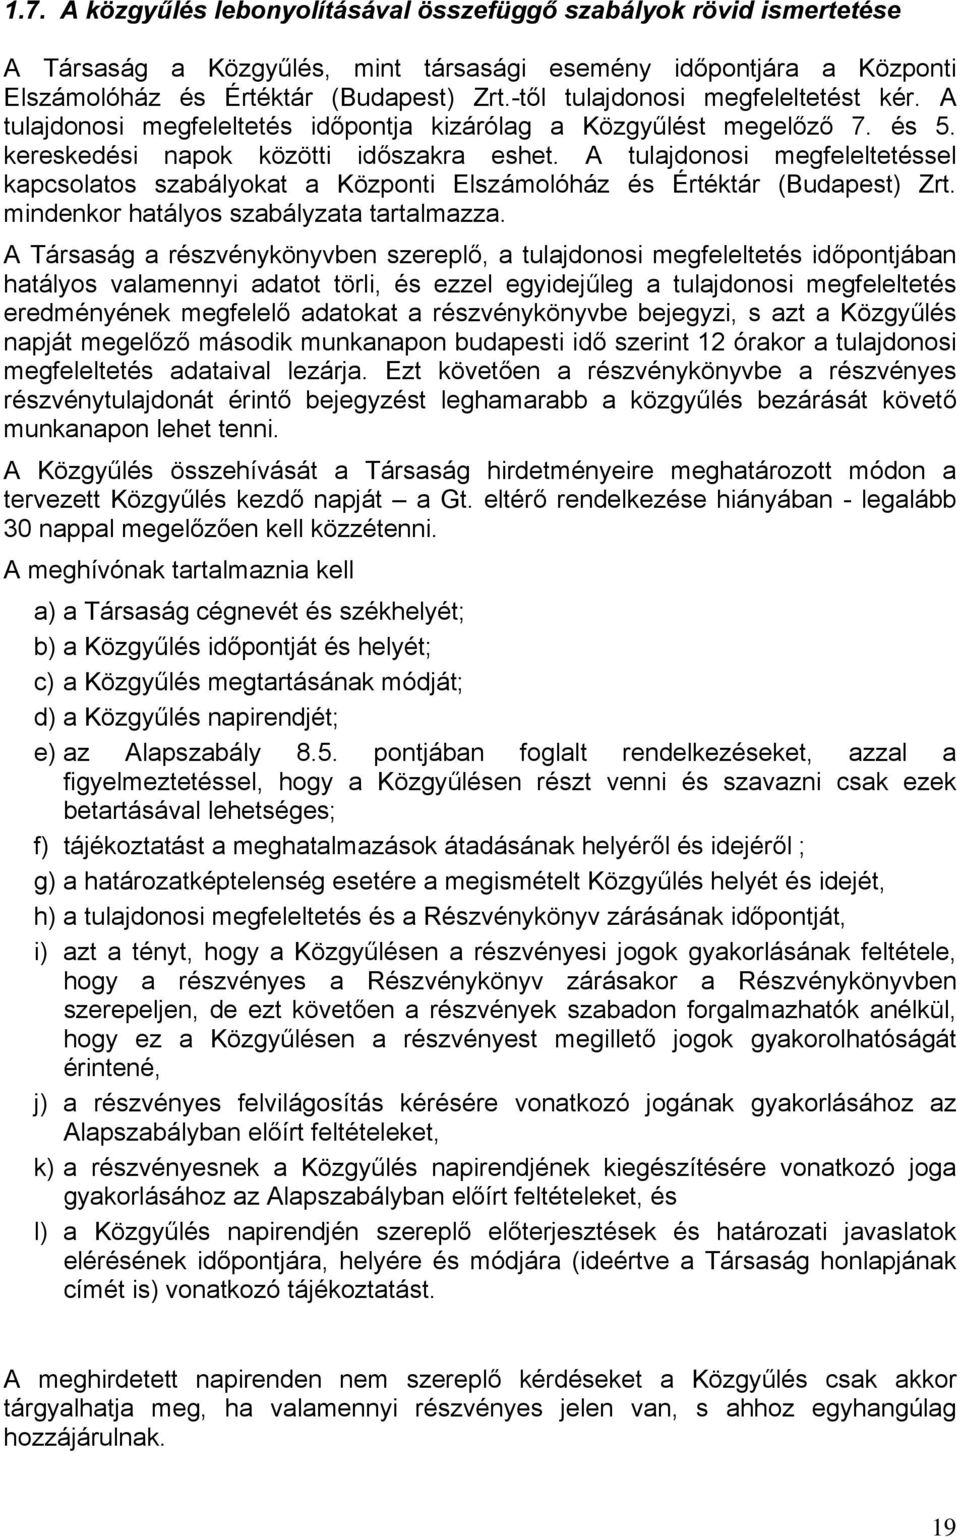 A tulajdonosi megfeleltetéssel kapcsolatos szabályokat a Központi Elszámolóház és Értéktár (Budapest) Zrt. mindenkor hatályos szabályzata tartalmazza.